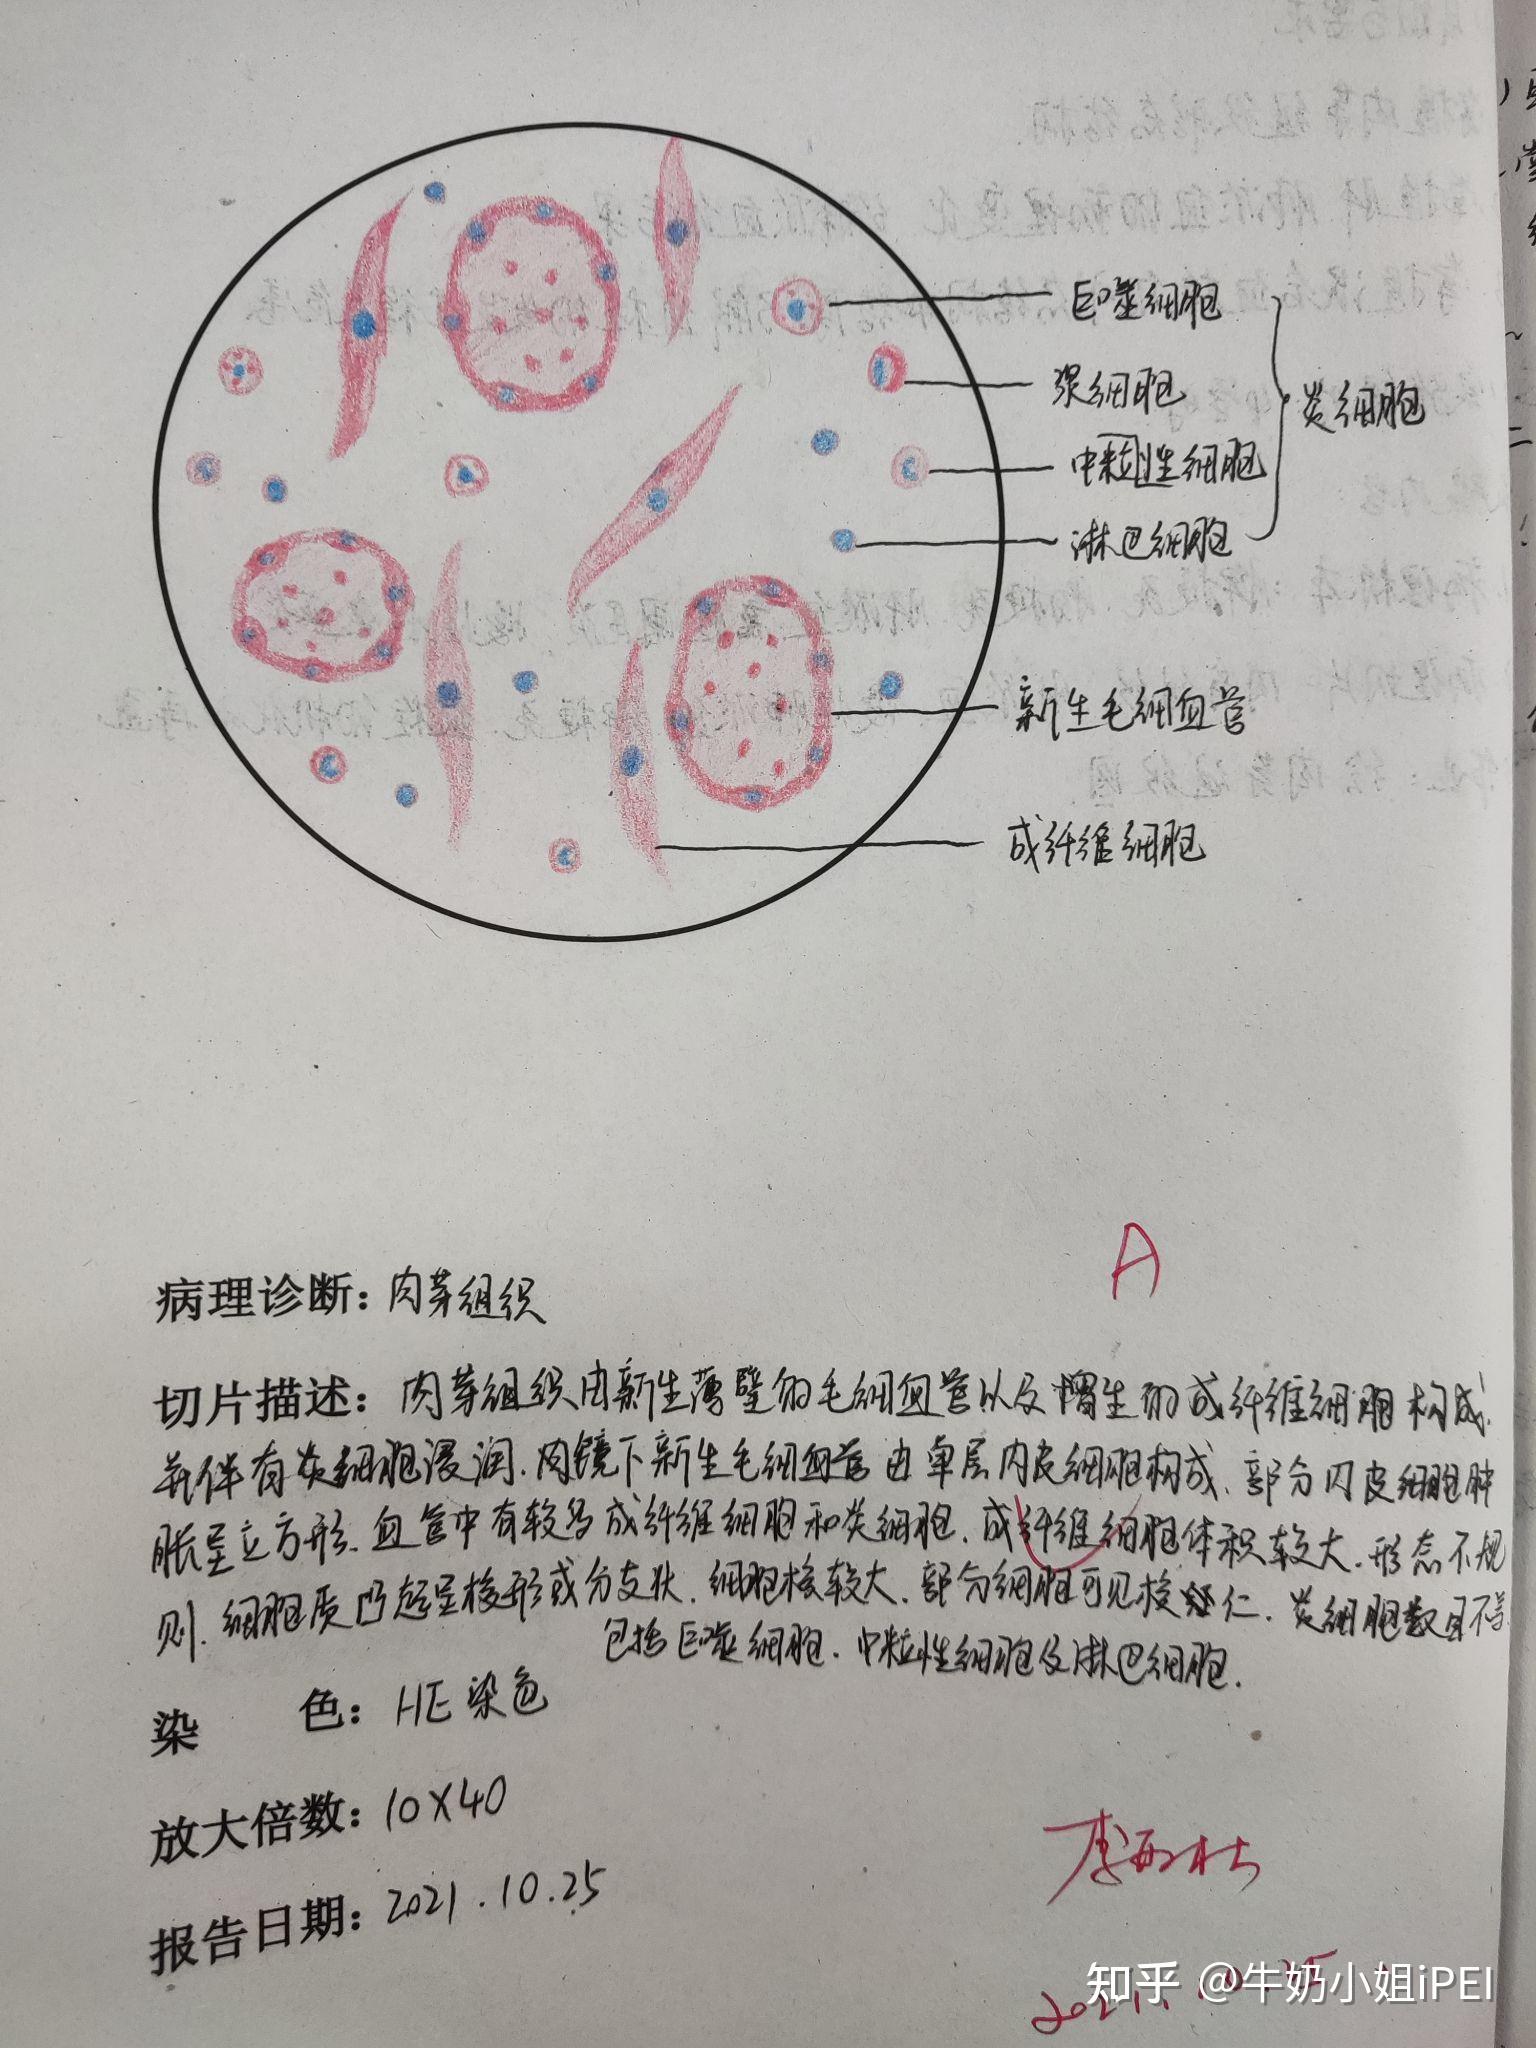 结核杆菌红蓝铅笔绘图图片